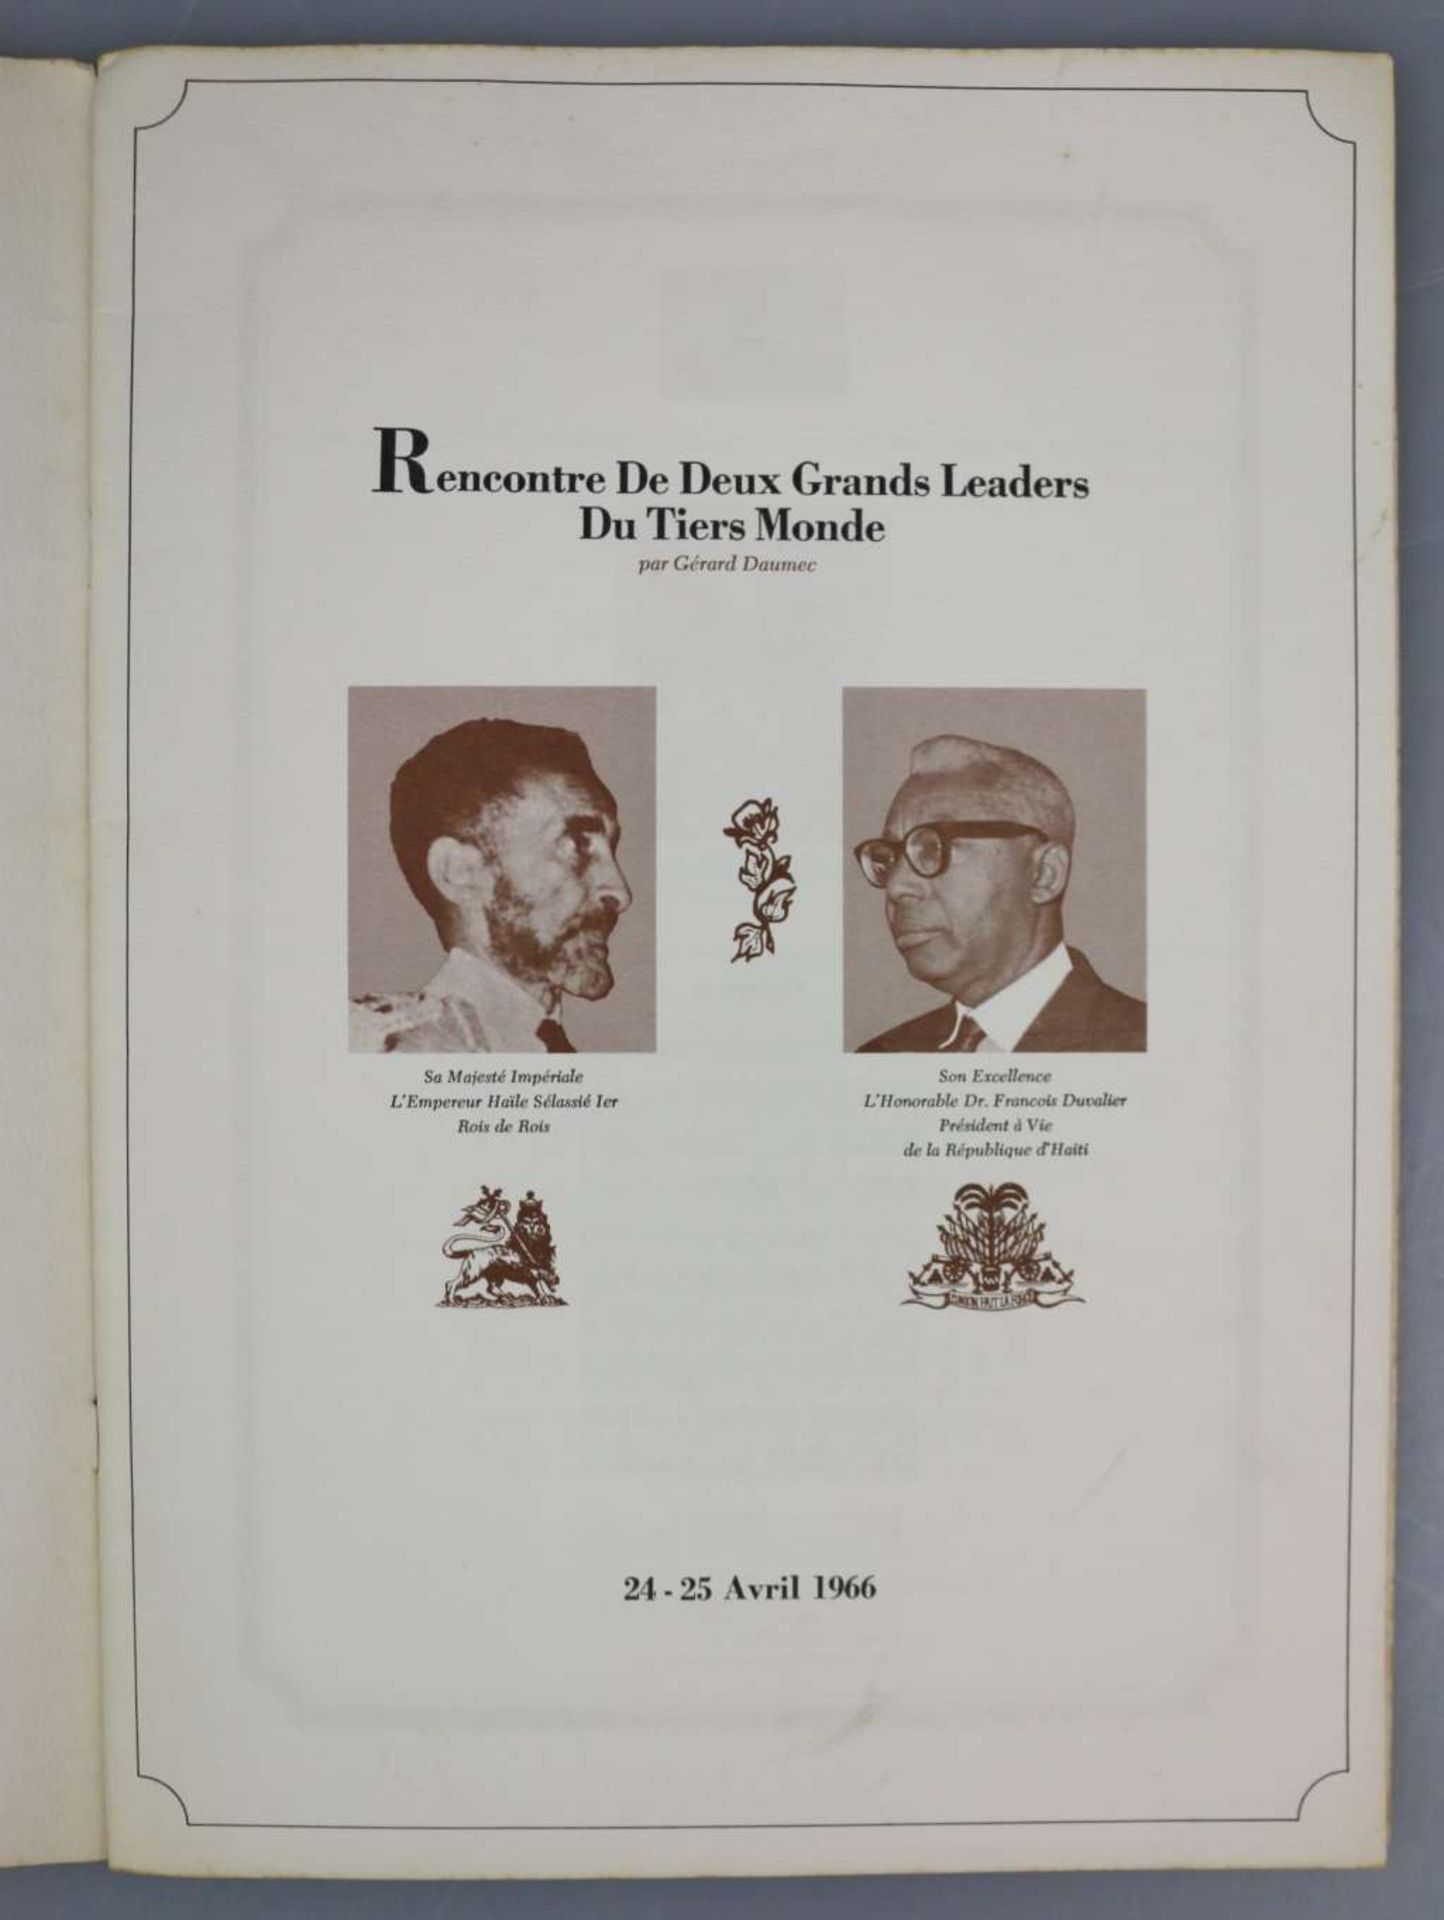 Autograph Dr. Francois Duvalier - Image 3 of 4